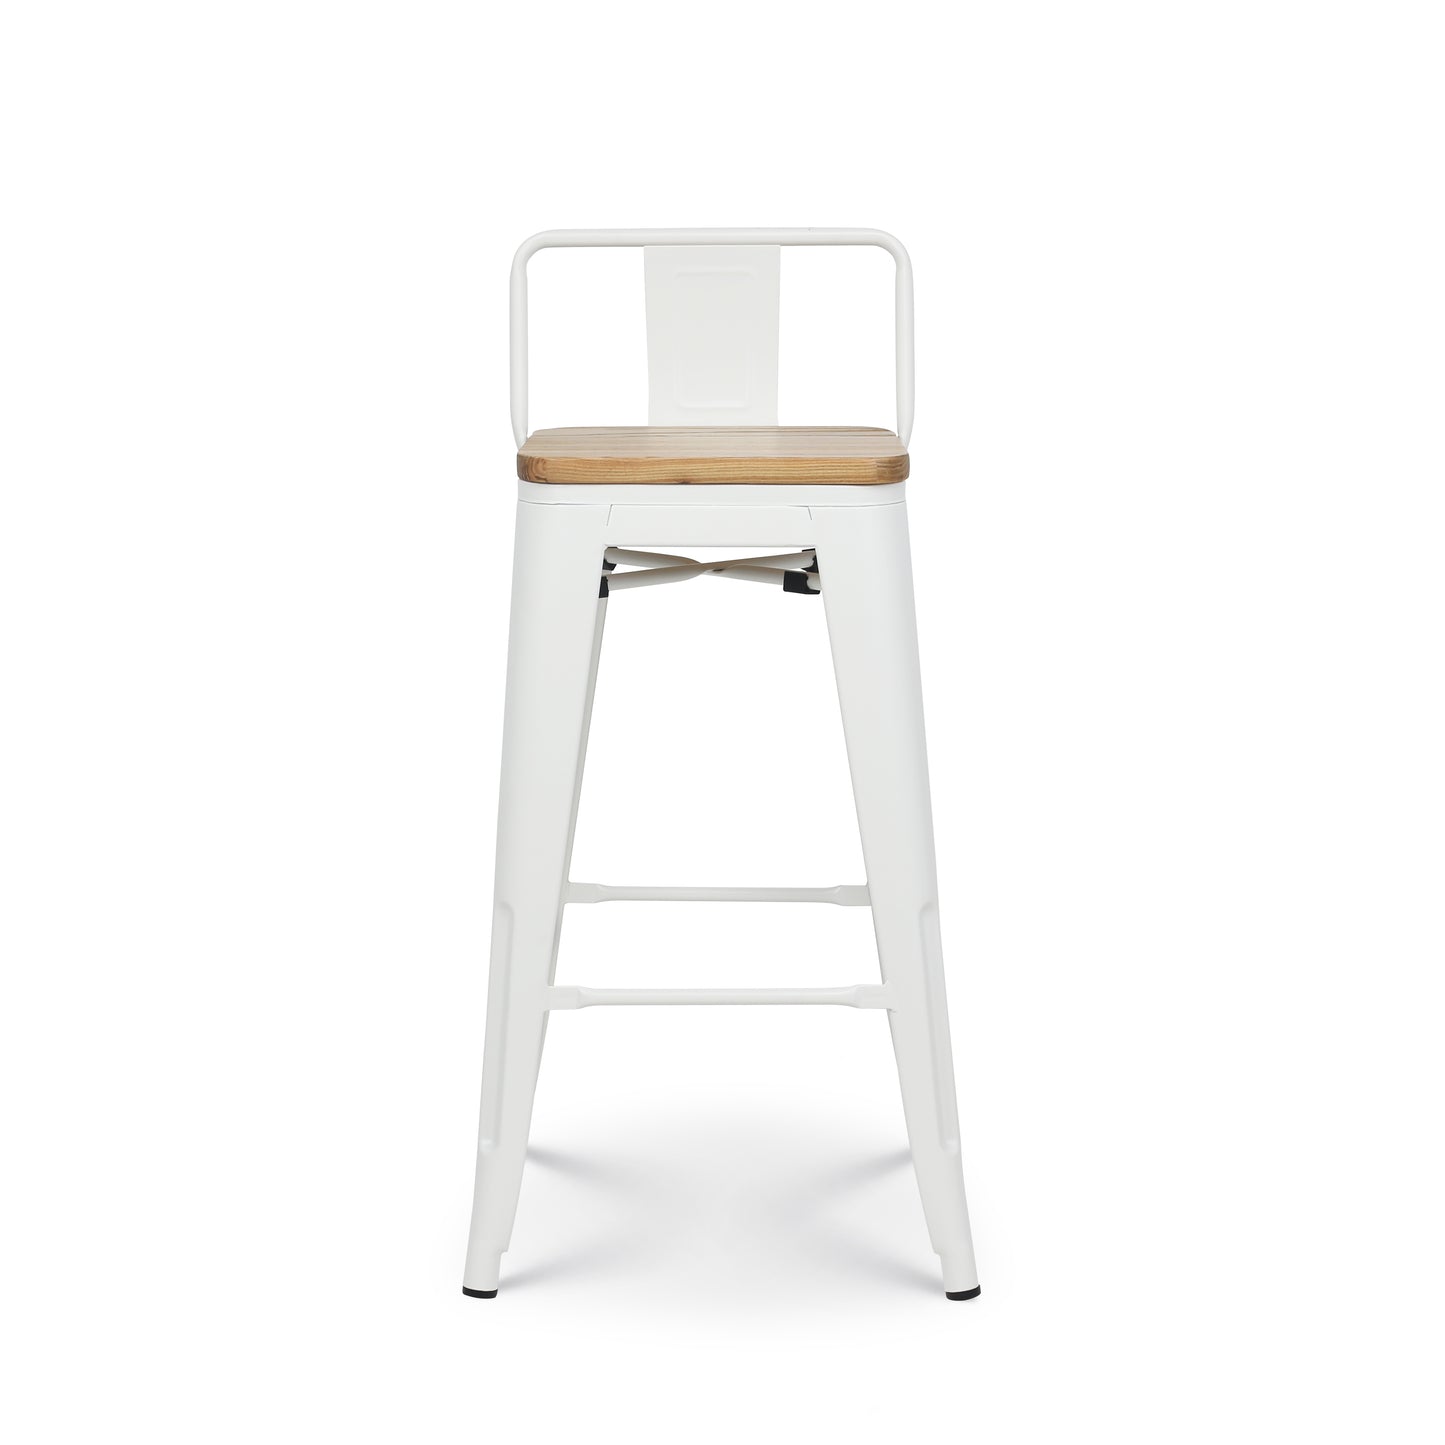 Tabouret style industriel blanc mat et assise en bois clair - Hauteur 76 cm